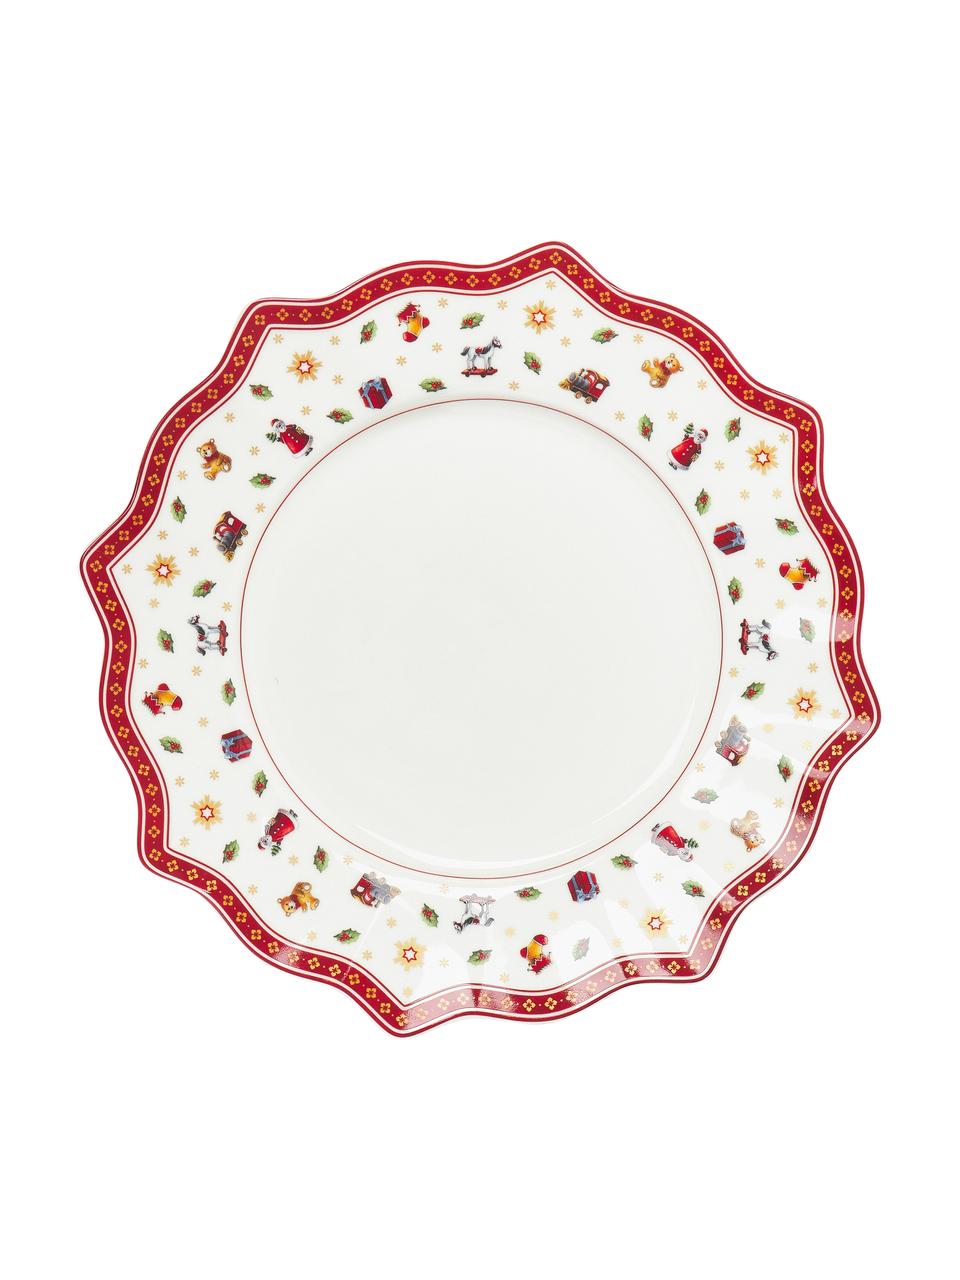 Súprava tanierov z porcelánu Toy's Delight, 4 osoby (8 dielov), Premium porcelán, Biela, červená, vzorovaná, 4 osoby (8 dielov)